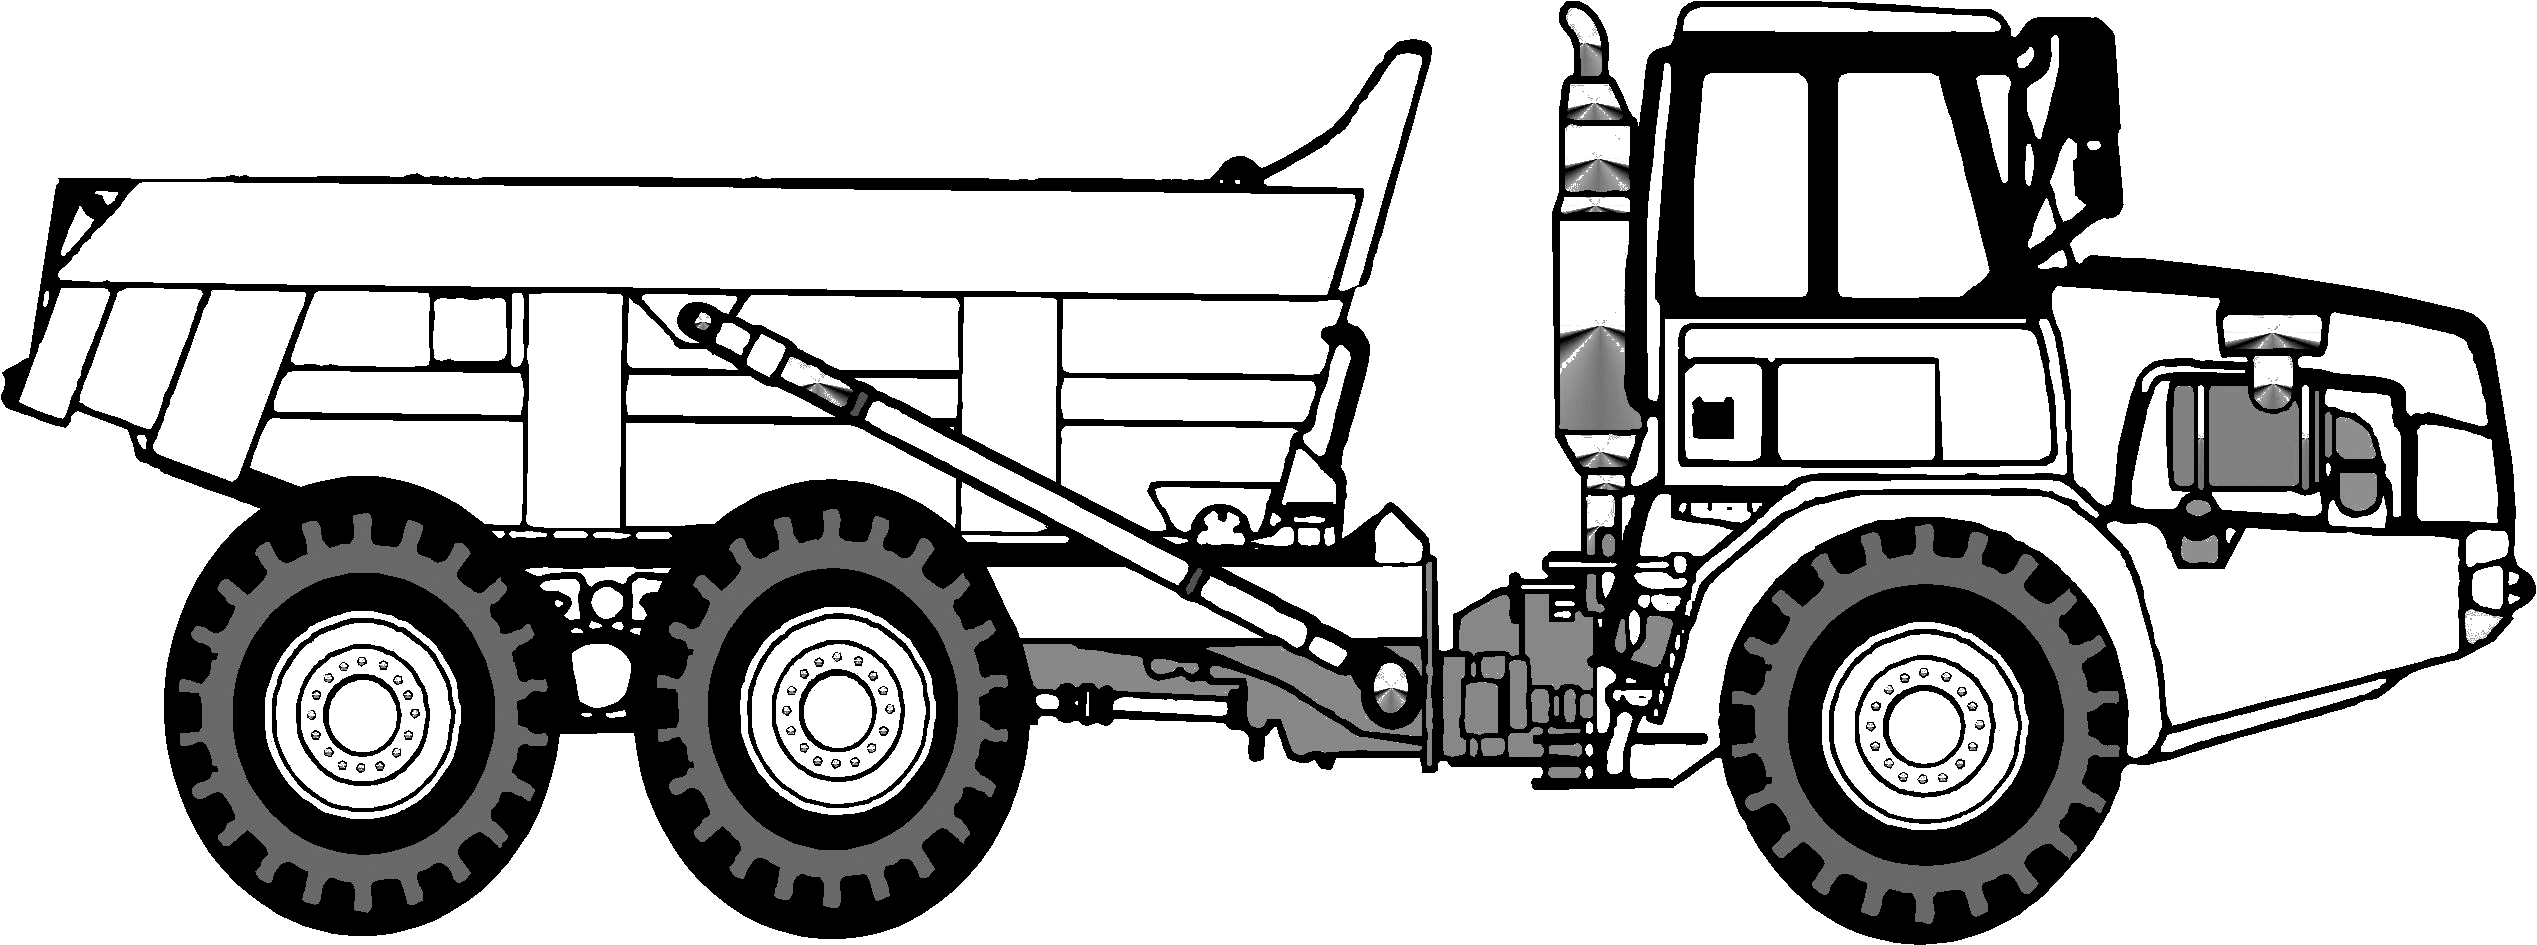 Other Articulating Dump Truck Blueprint